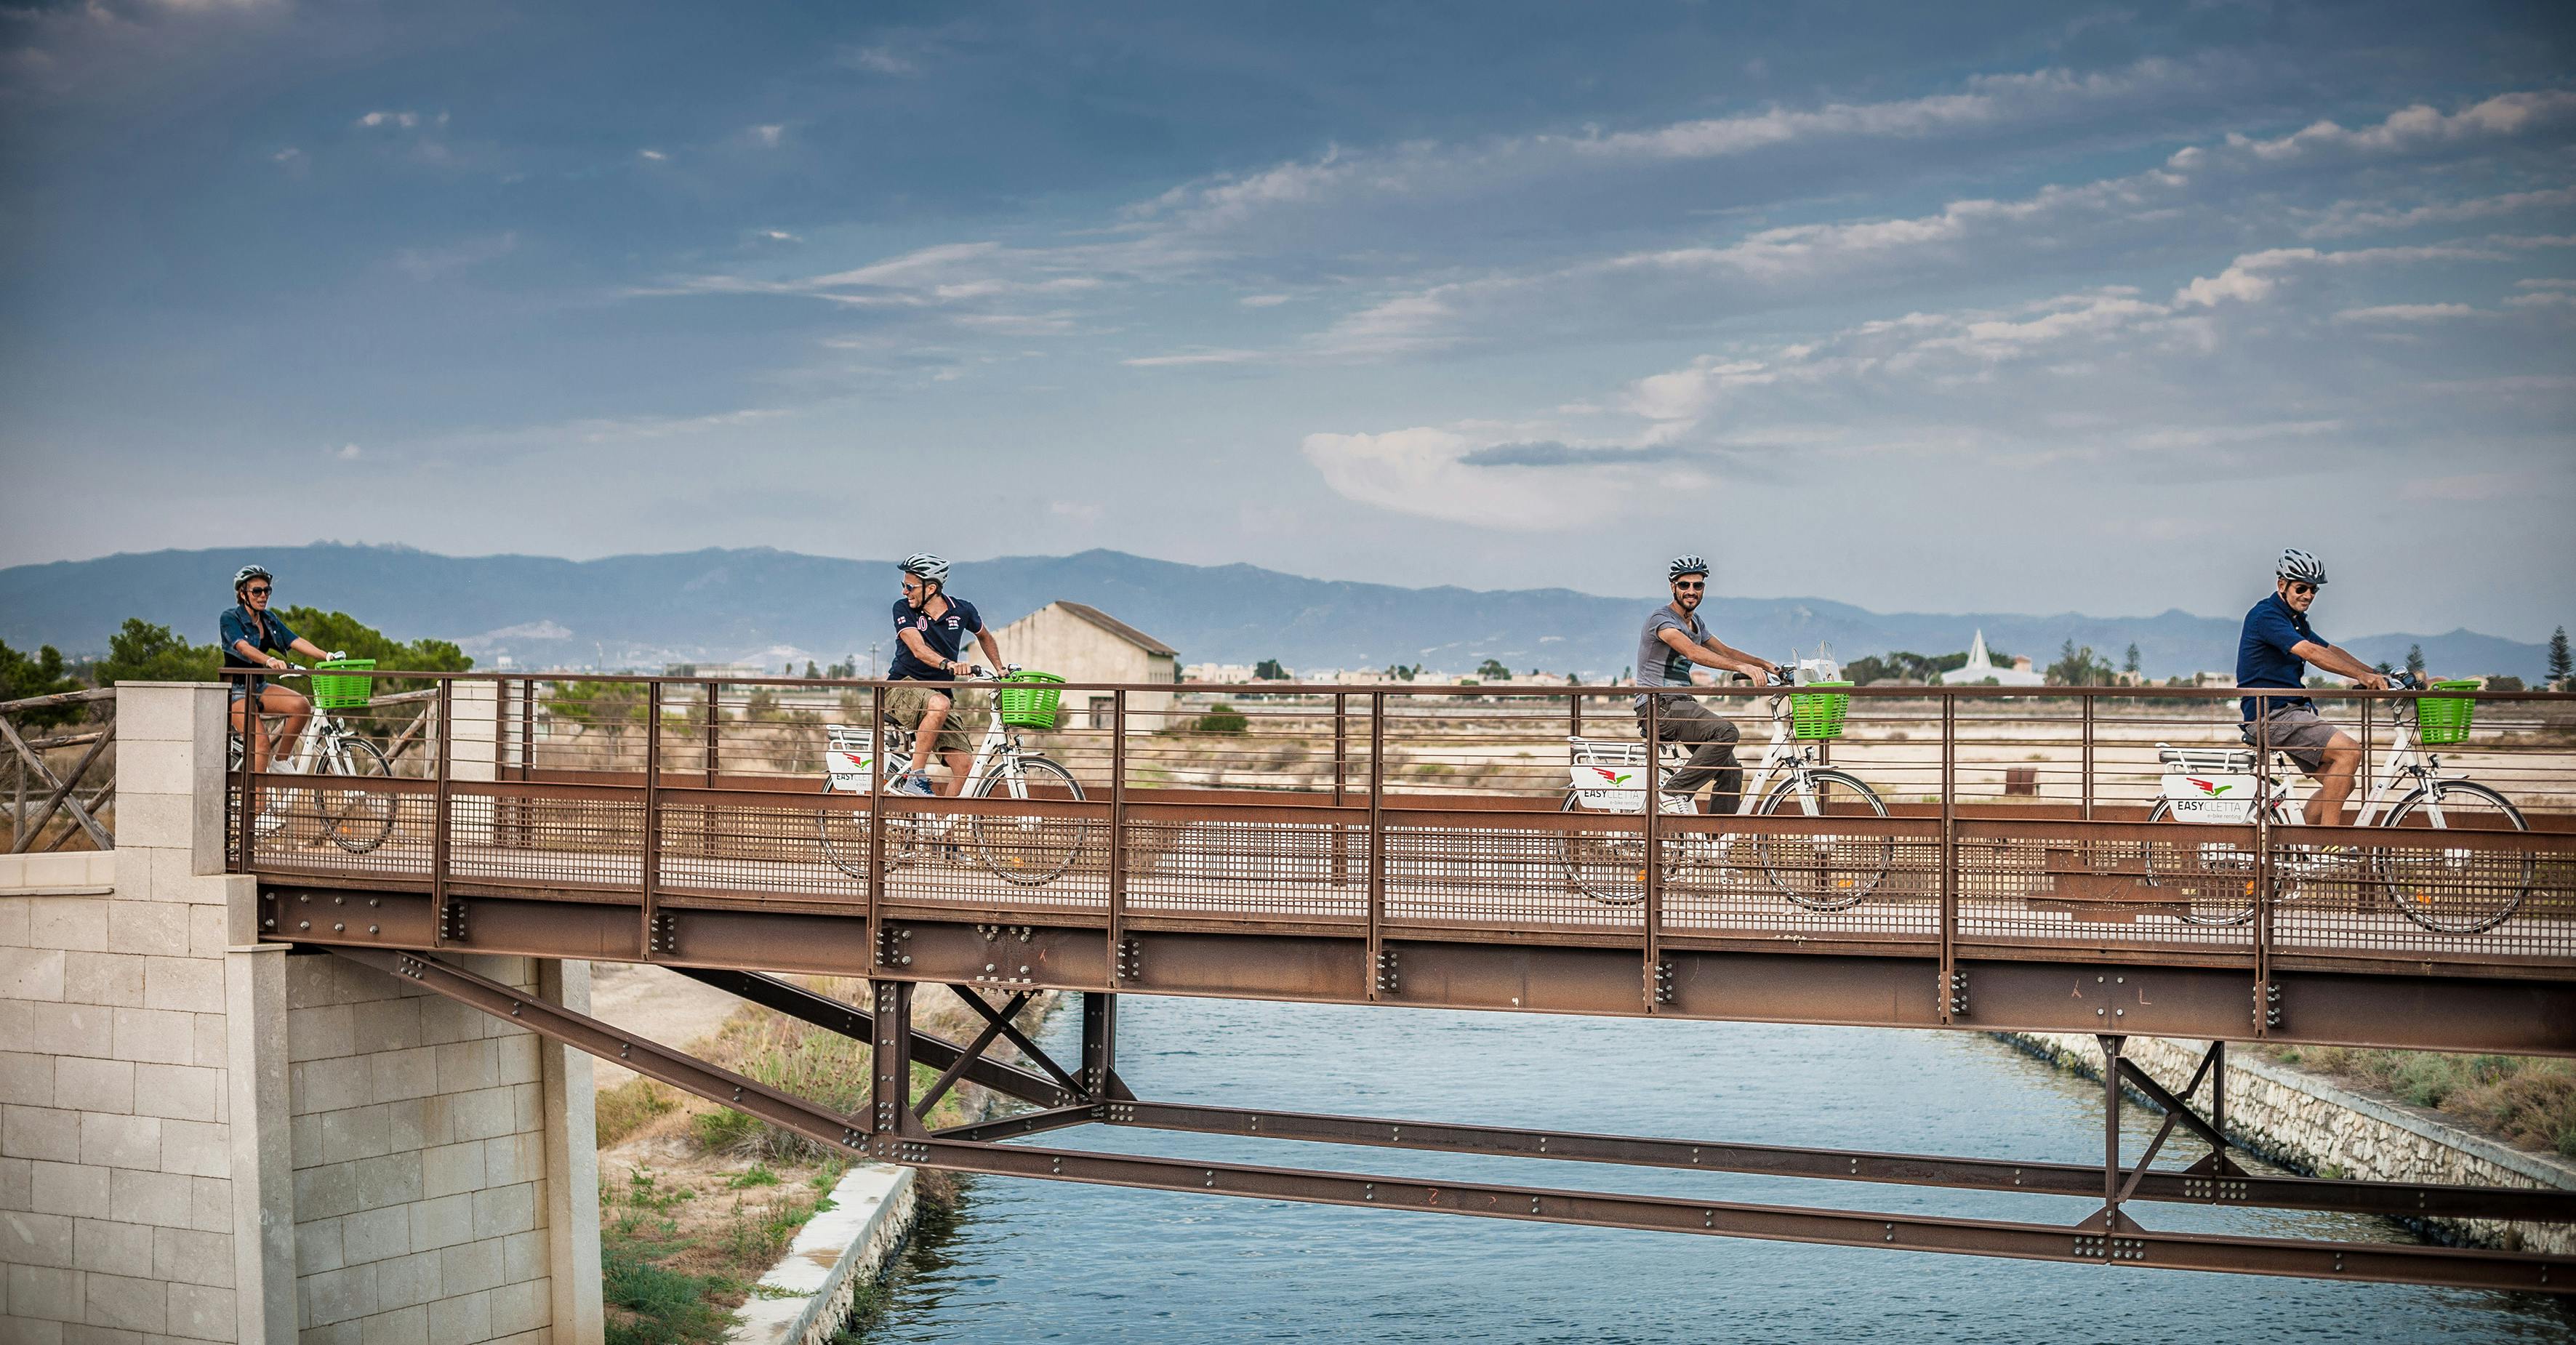 Recorrido en bicicleta eléctrica por el parque Molentargius, la playa de Poetto y el faro de Sant'Elia